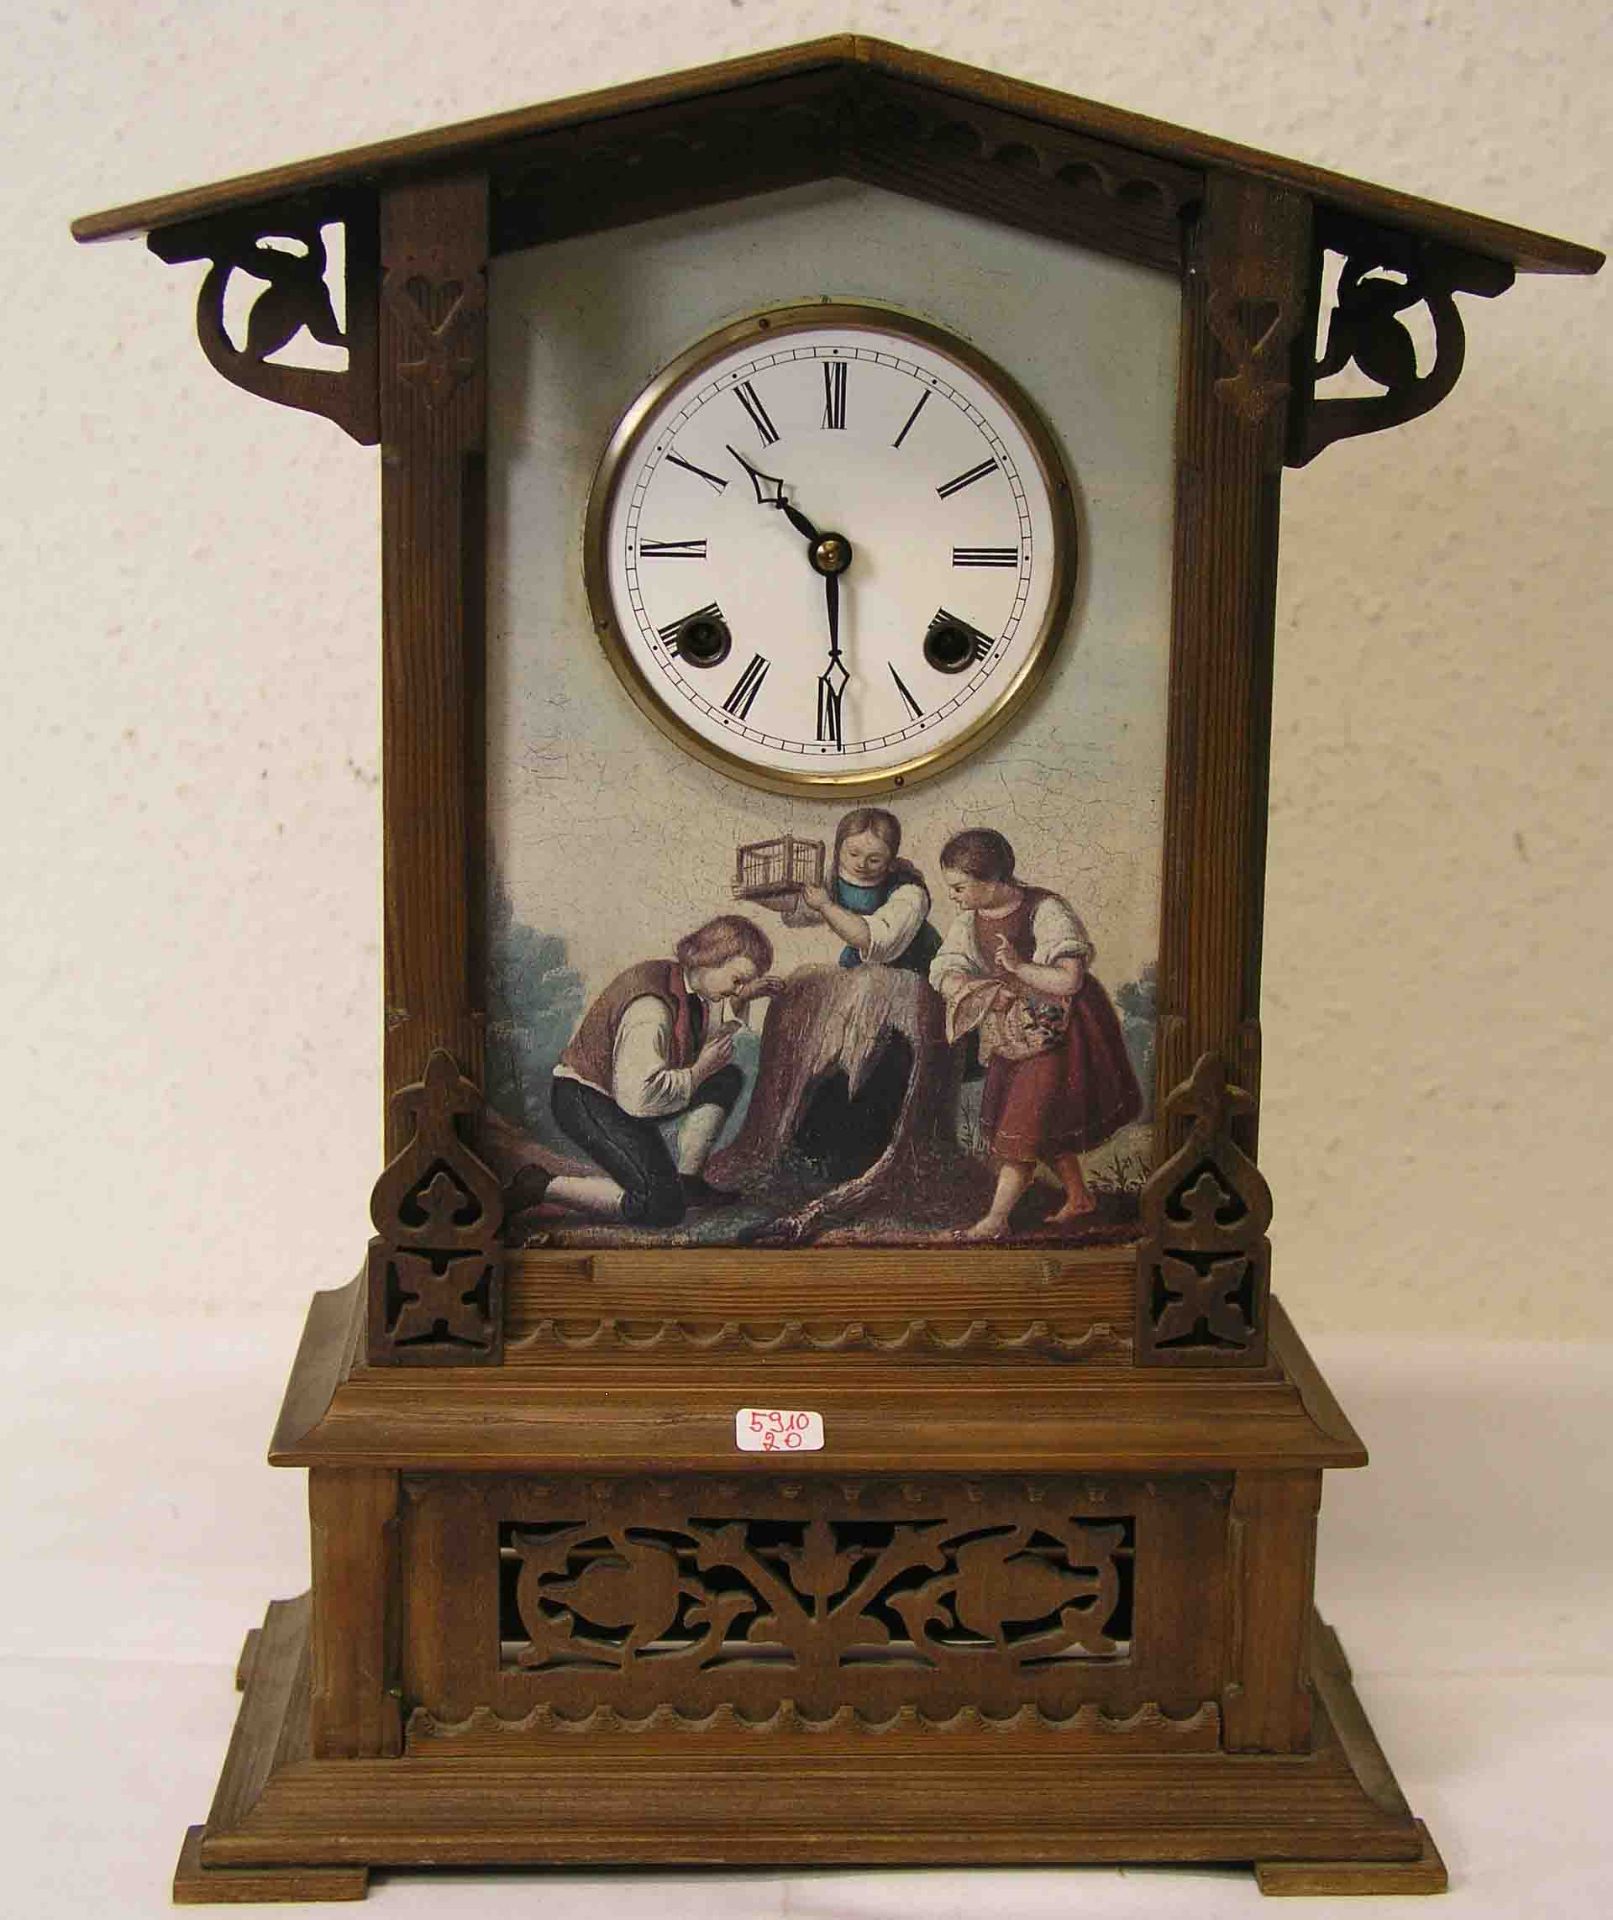 Bäuerliche Tischuhr, um 1930. Holzgehäuse. Uhrenfront mit Farbdruck. E.Z. mit römischen